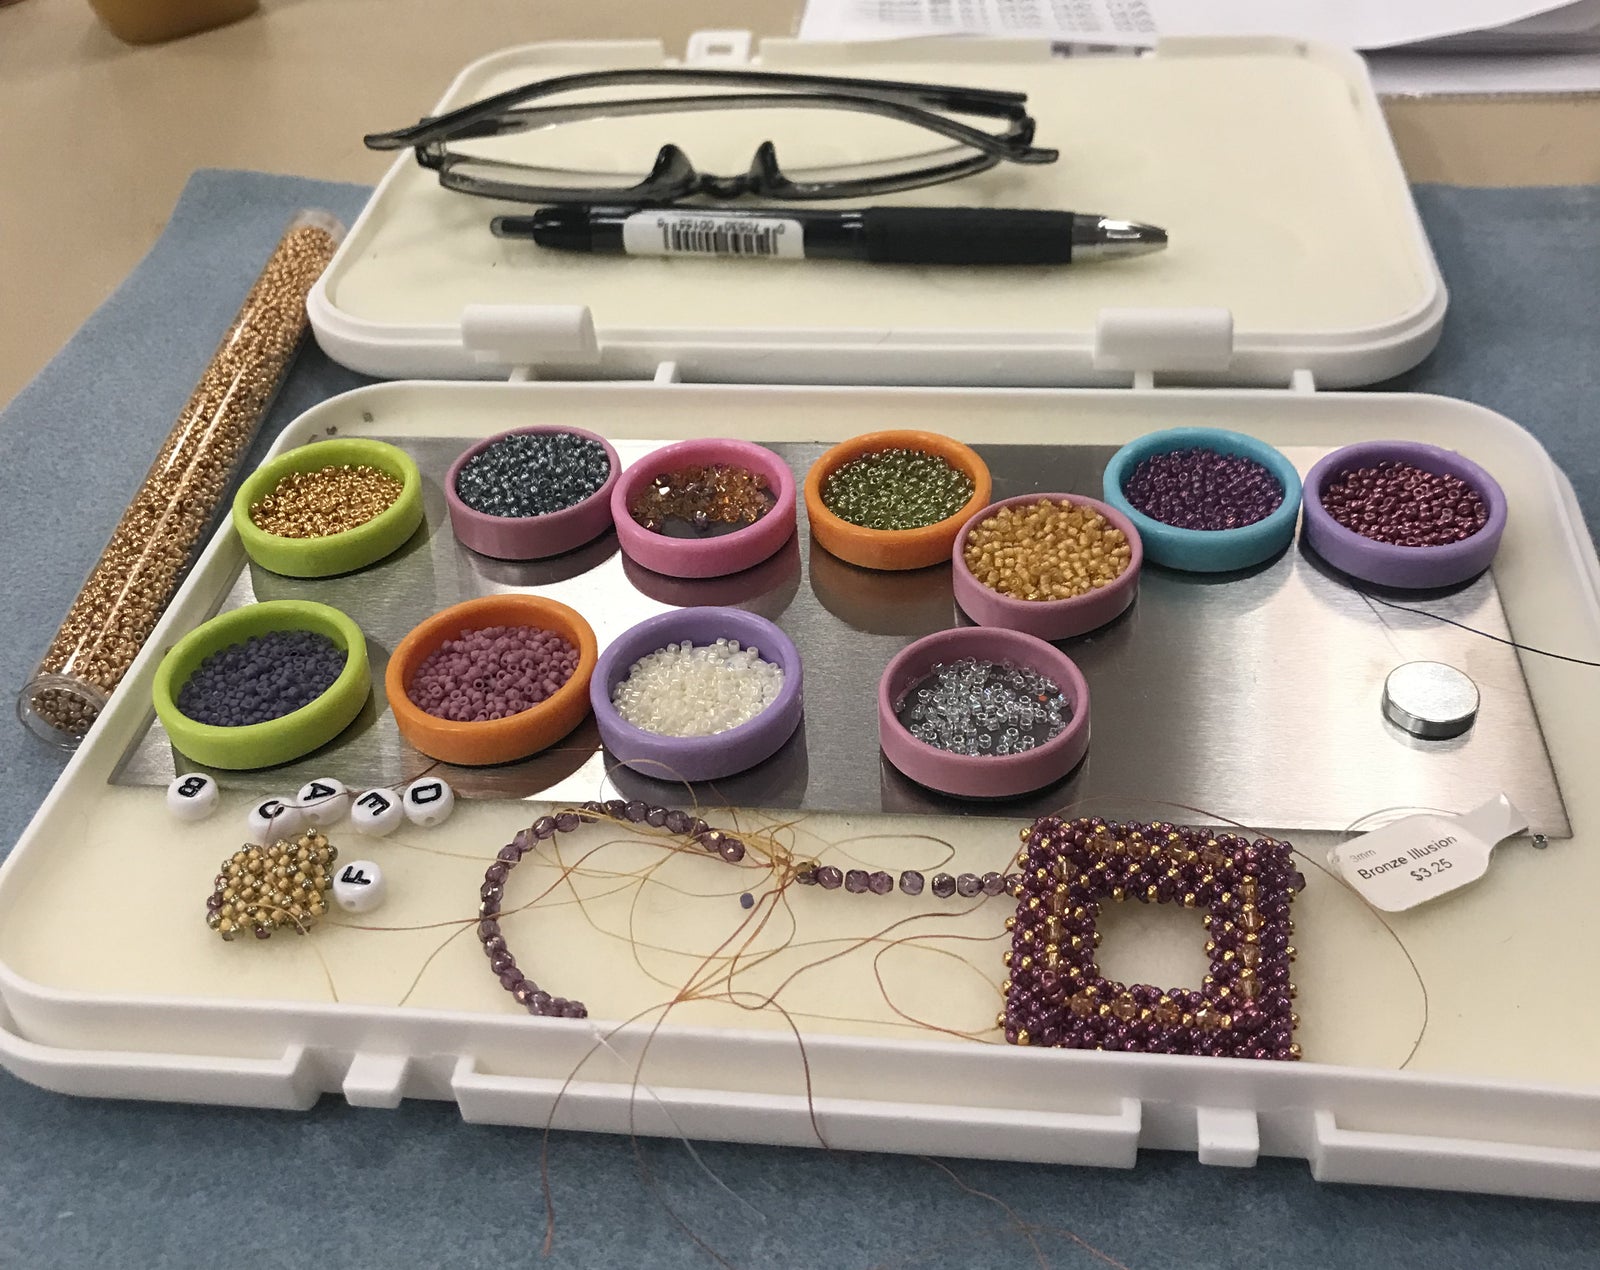 Hanukkah Menorah Beaded Earring Kit - Beads Gone Wild